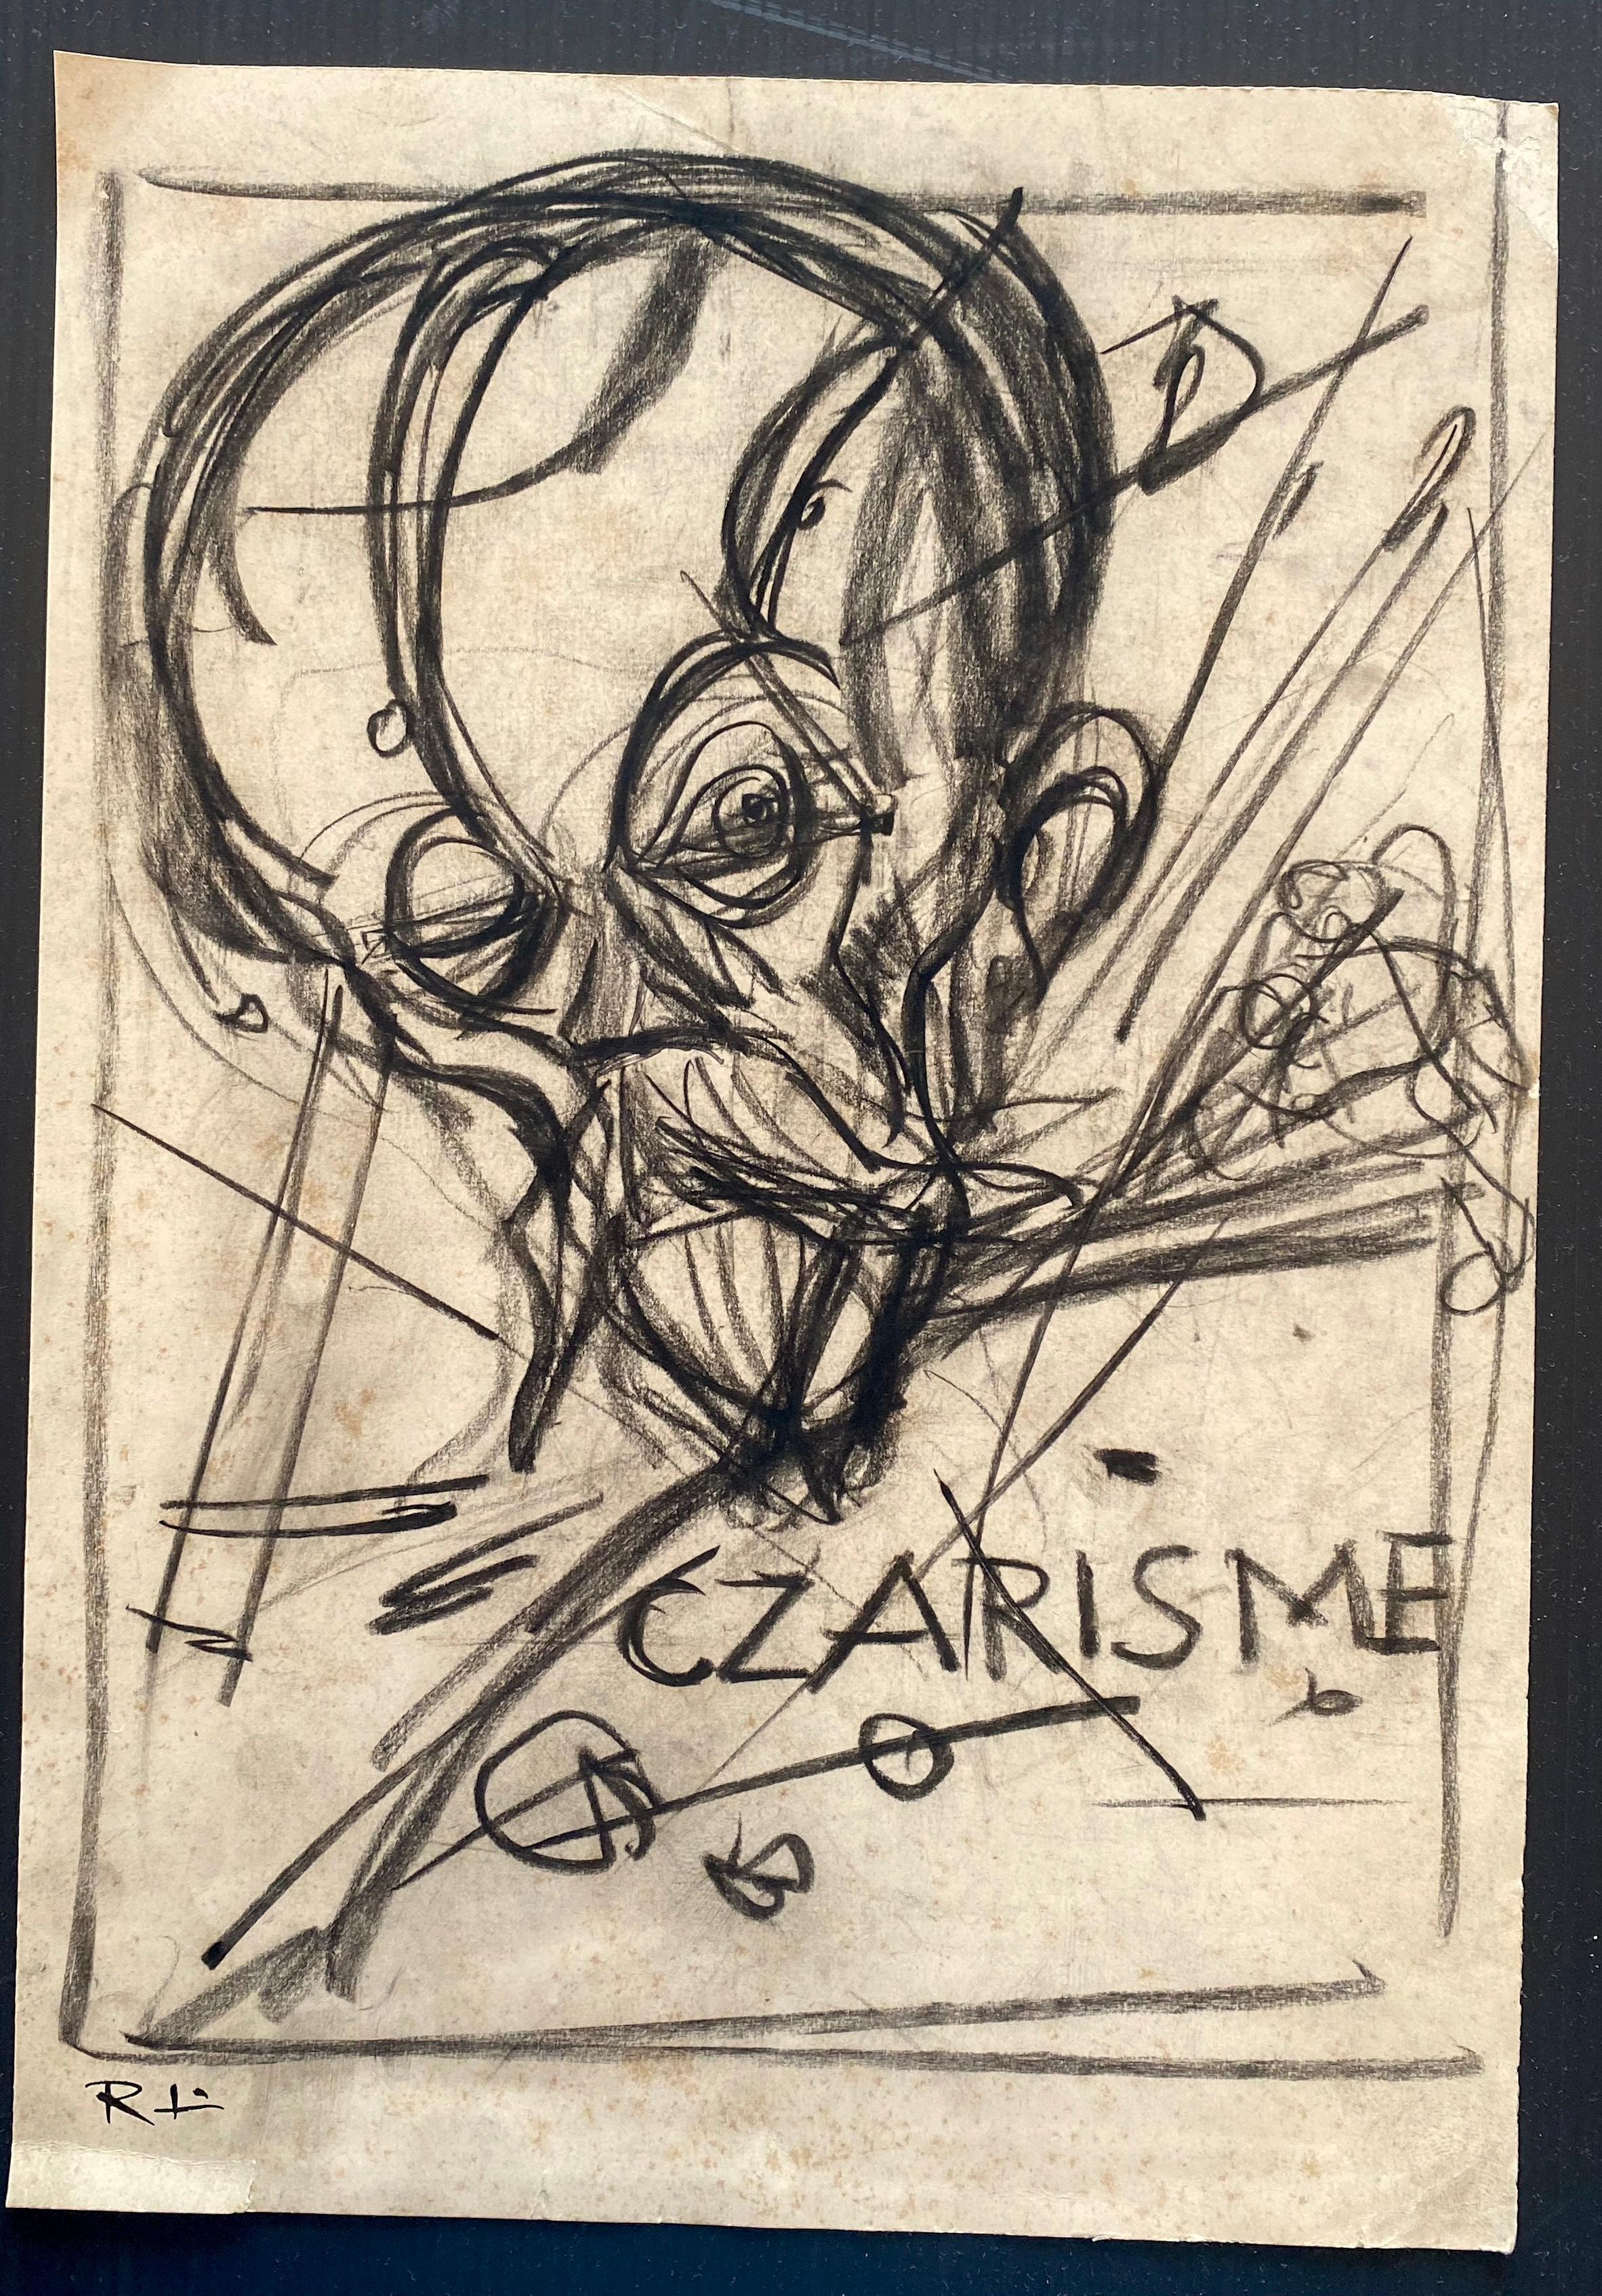 Czarisme ist eine Originalzeichnung in Bleistift und Feder von Gabriele Galantara.

Guter Zustand bis auf diffuse Stockflecken und zwei Ausrisse am unteren Rand.

Das Kunstwerk wird mit sicheren Strichen und perfekten Schraffuren